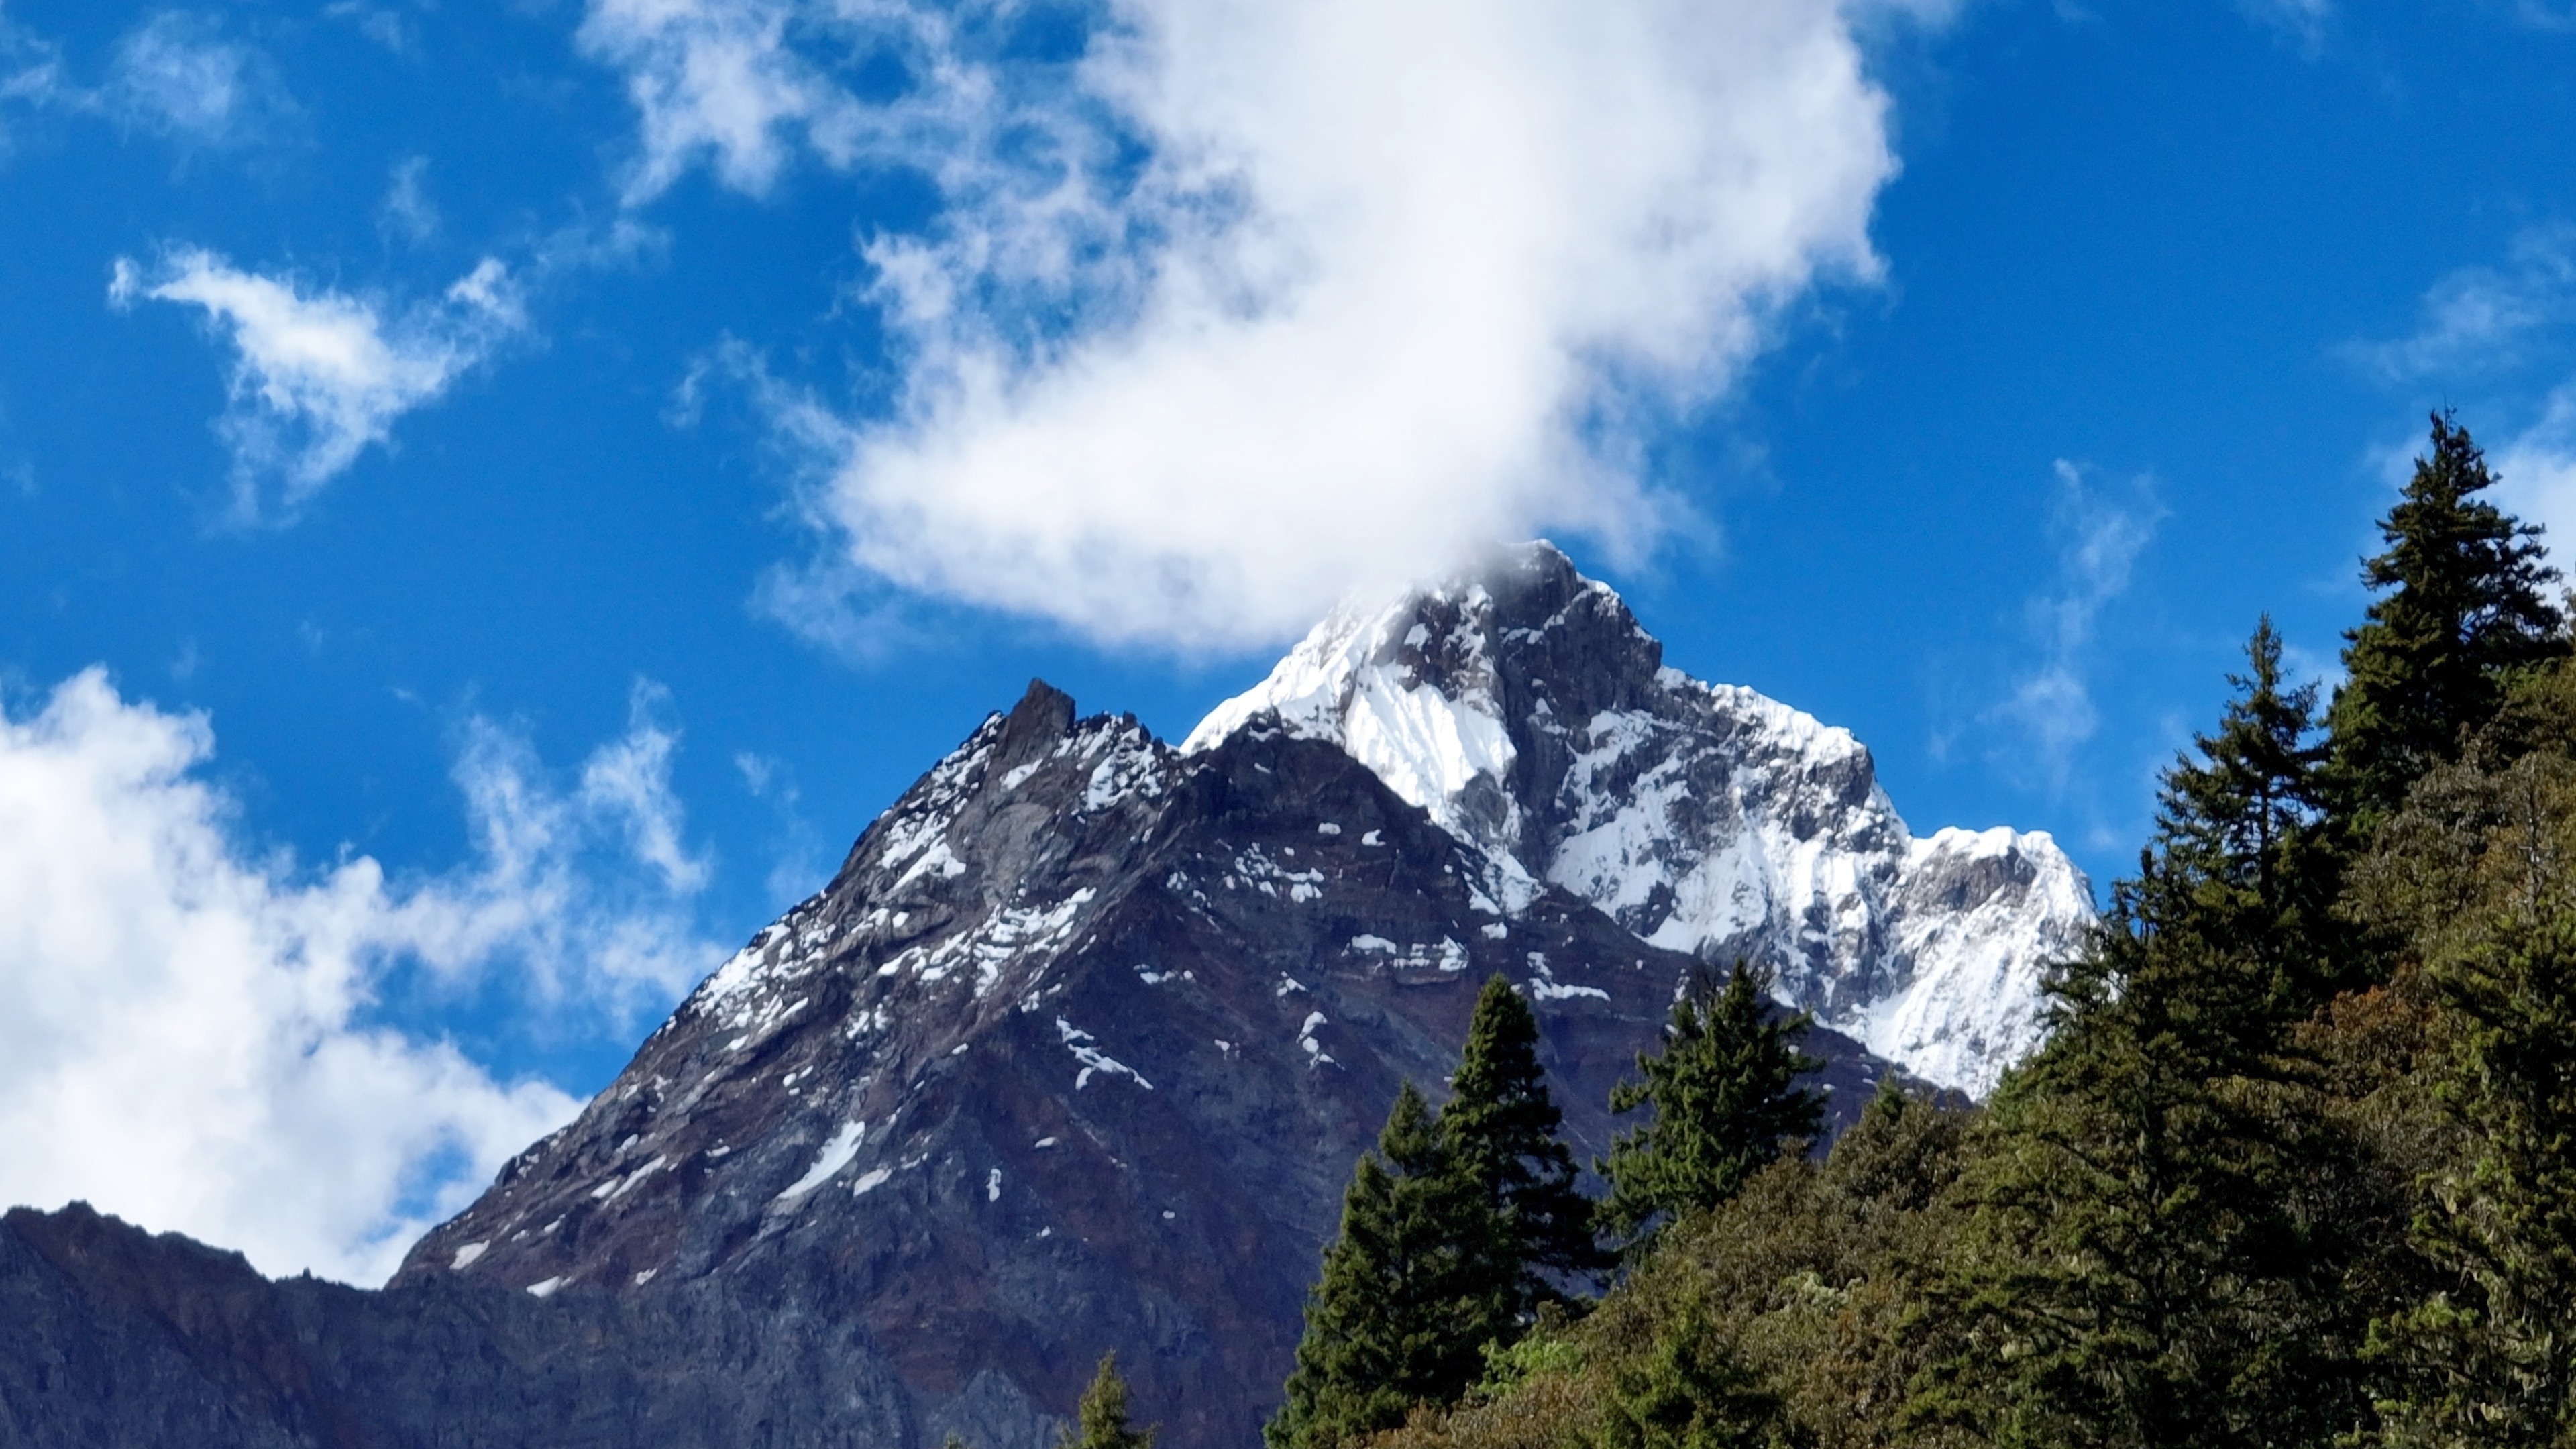 航拍视角饱览西藏林芝绝美风景:青山碧水与雪山同框